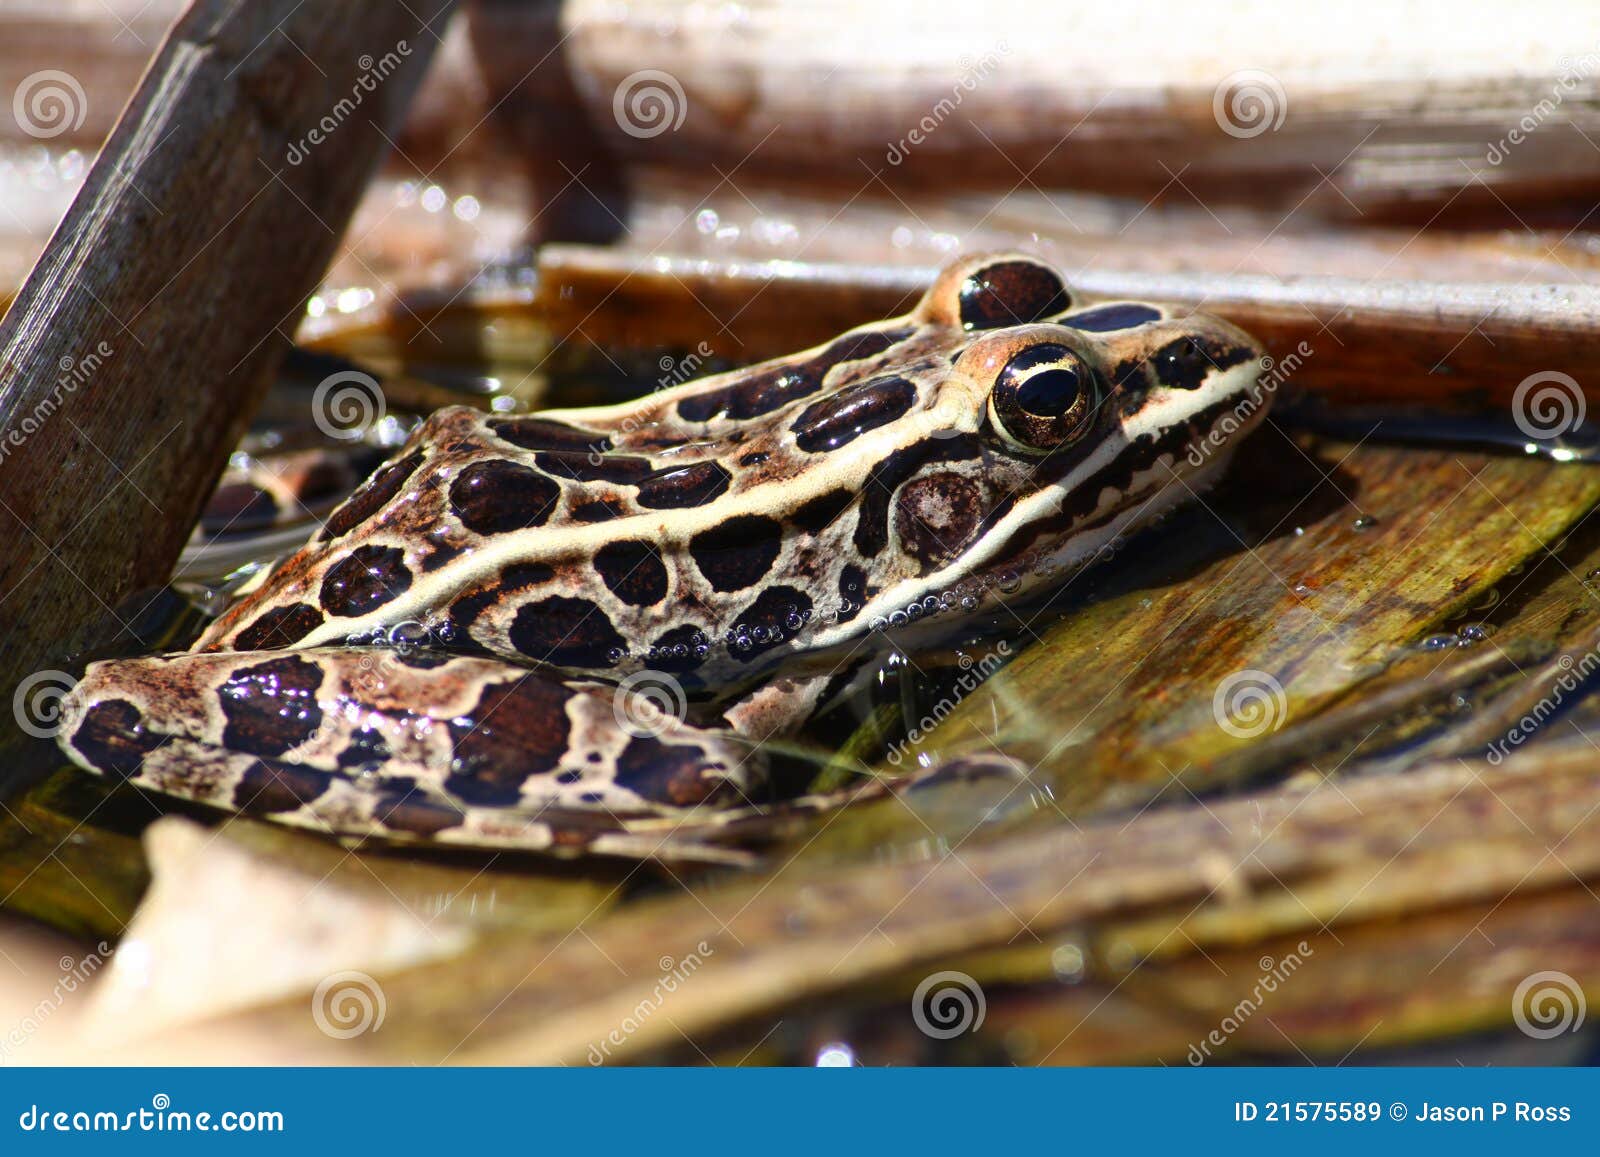 northern leopard frog (rana pipiens)